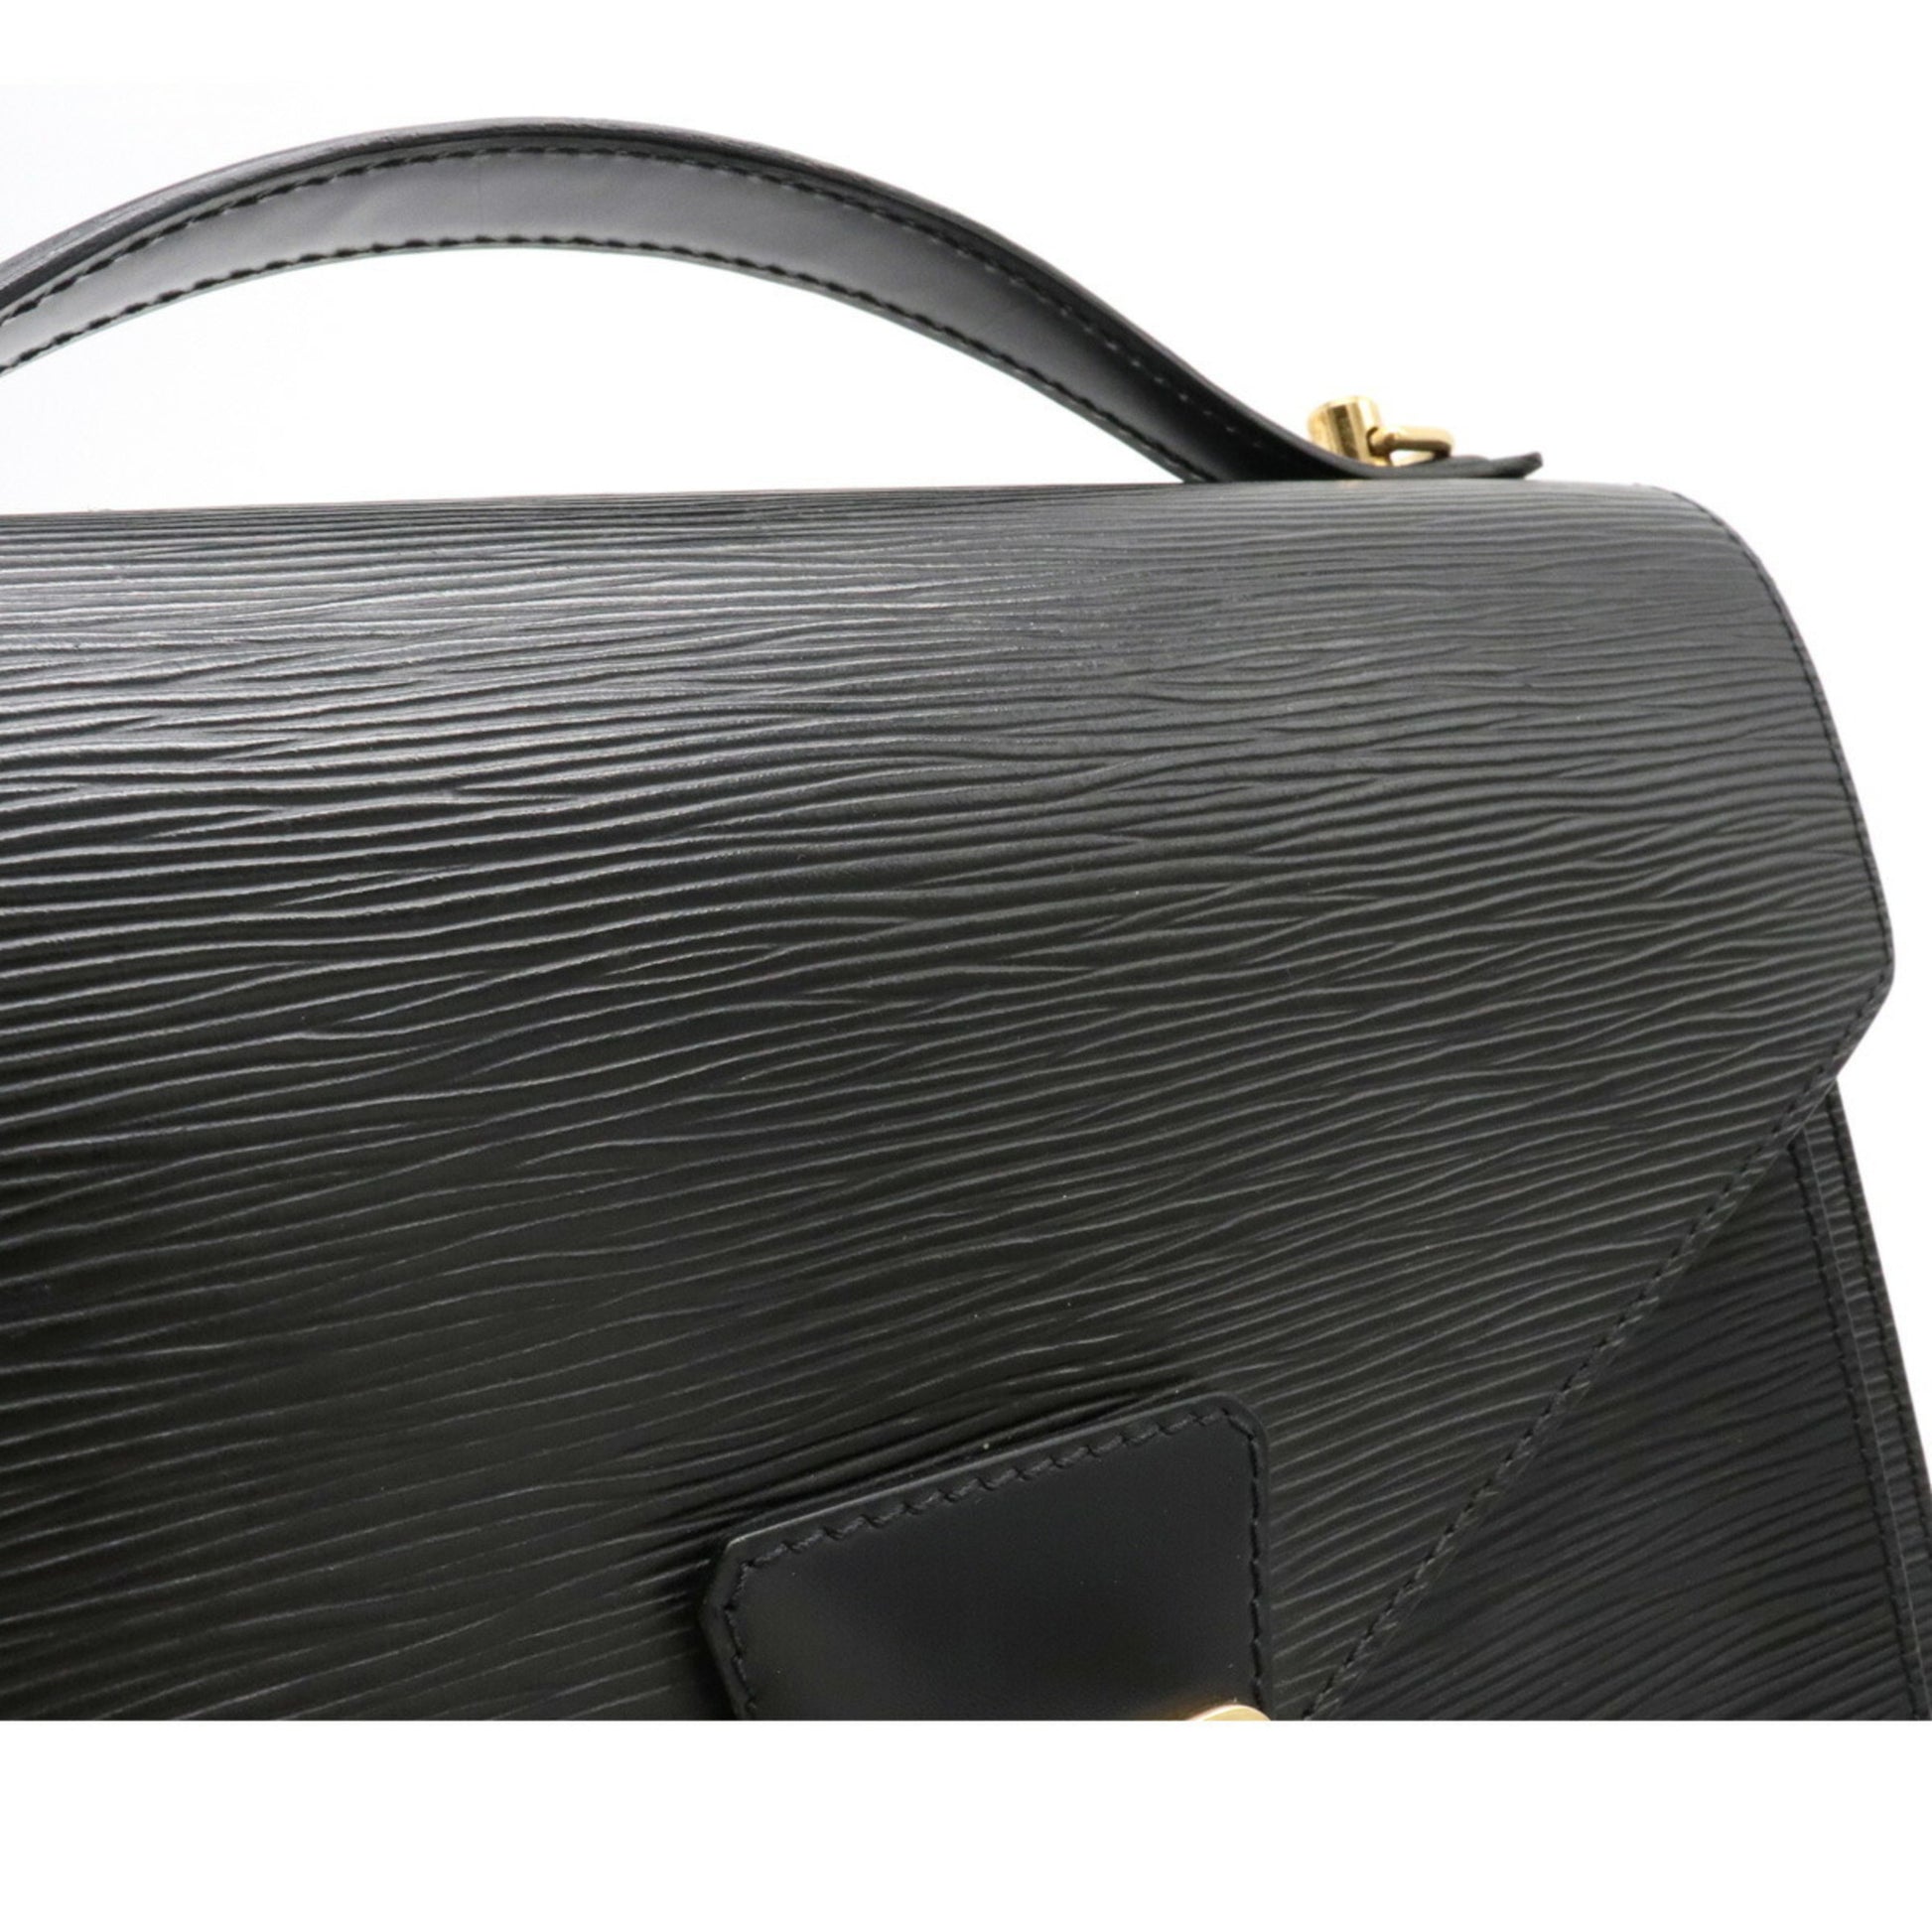 LOUIS VUITTON Handbag M52122 Monceau 28 2WAY Epi Leather Black Noir Women  Used